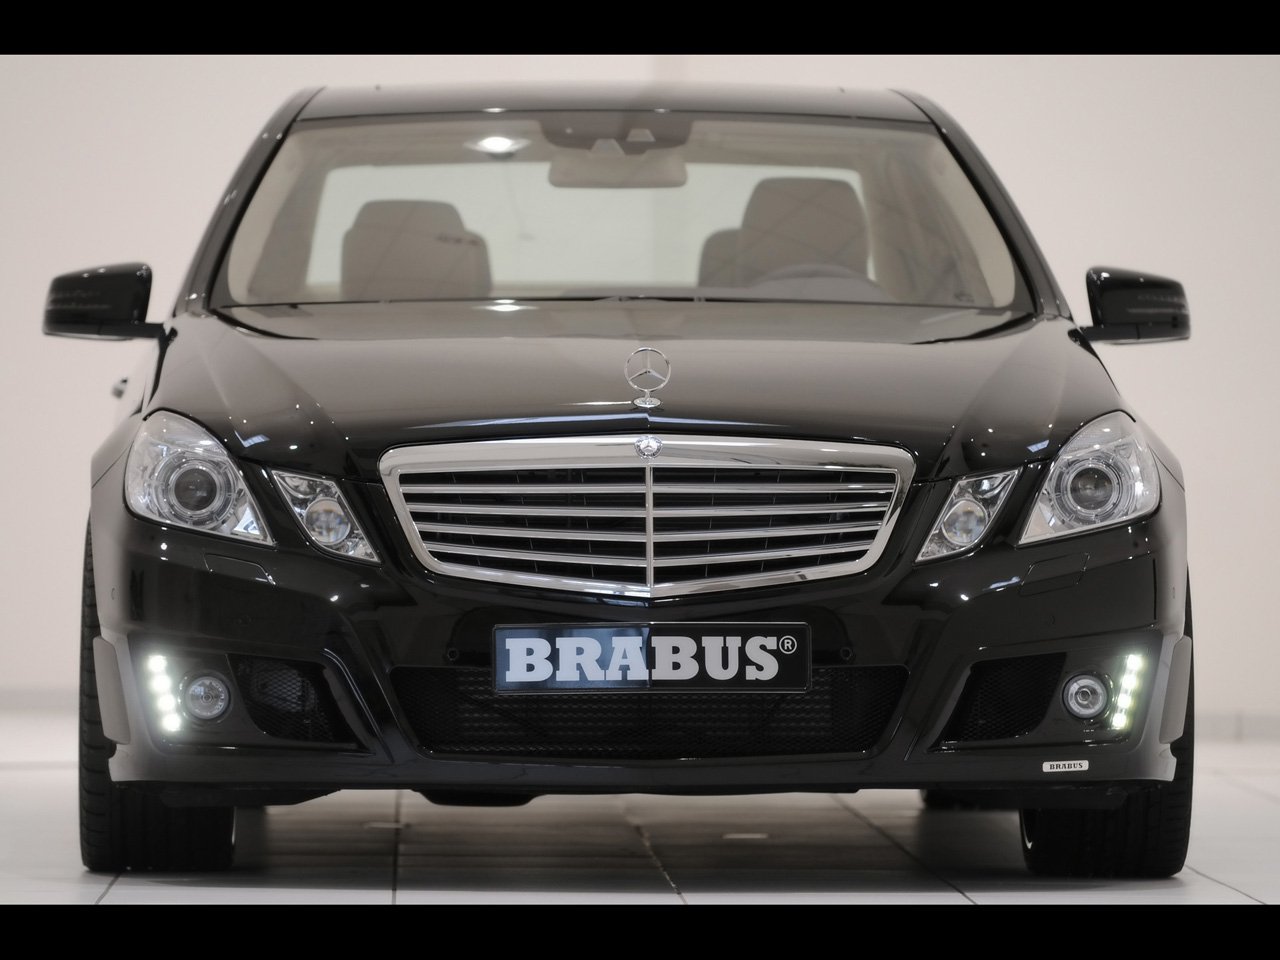 14478031852009-Brabus-Mercedes-Benz-E-Class-Front-1280x960